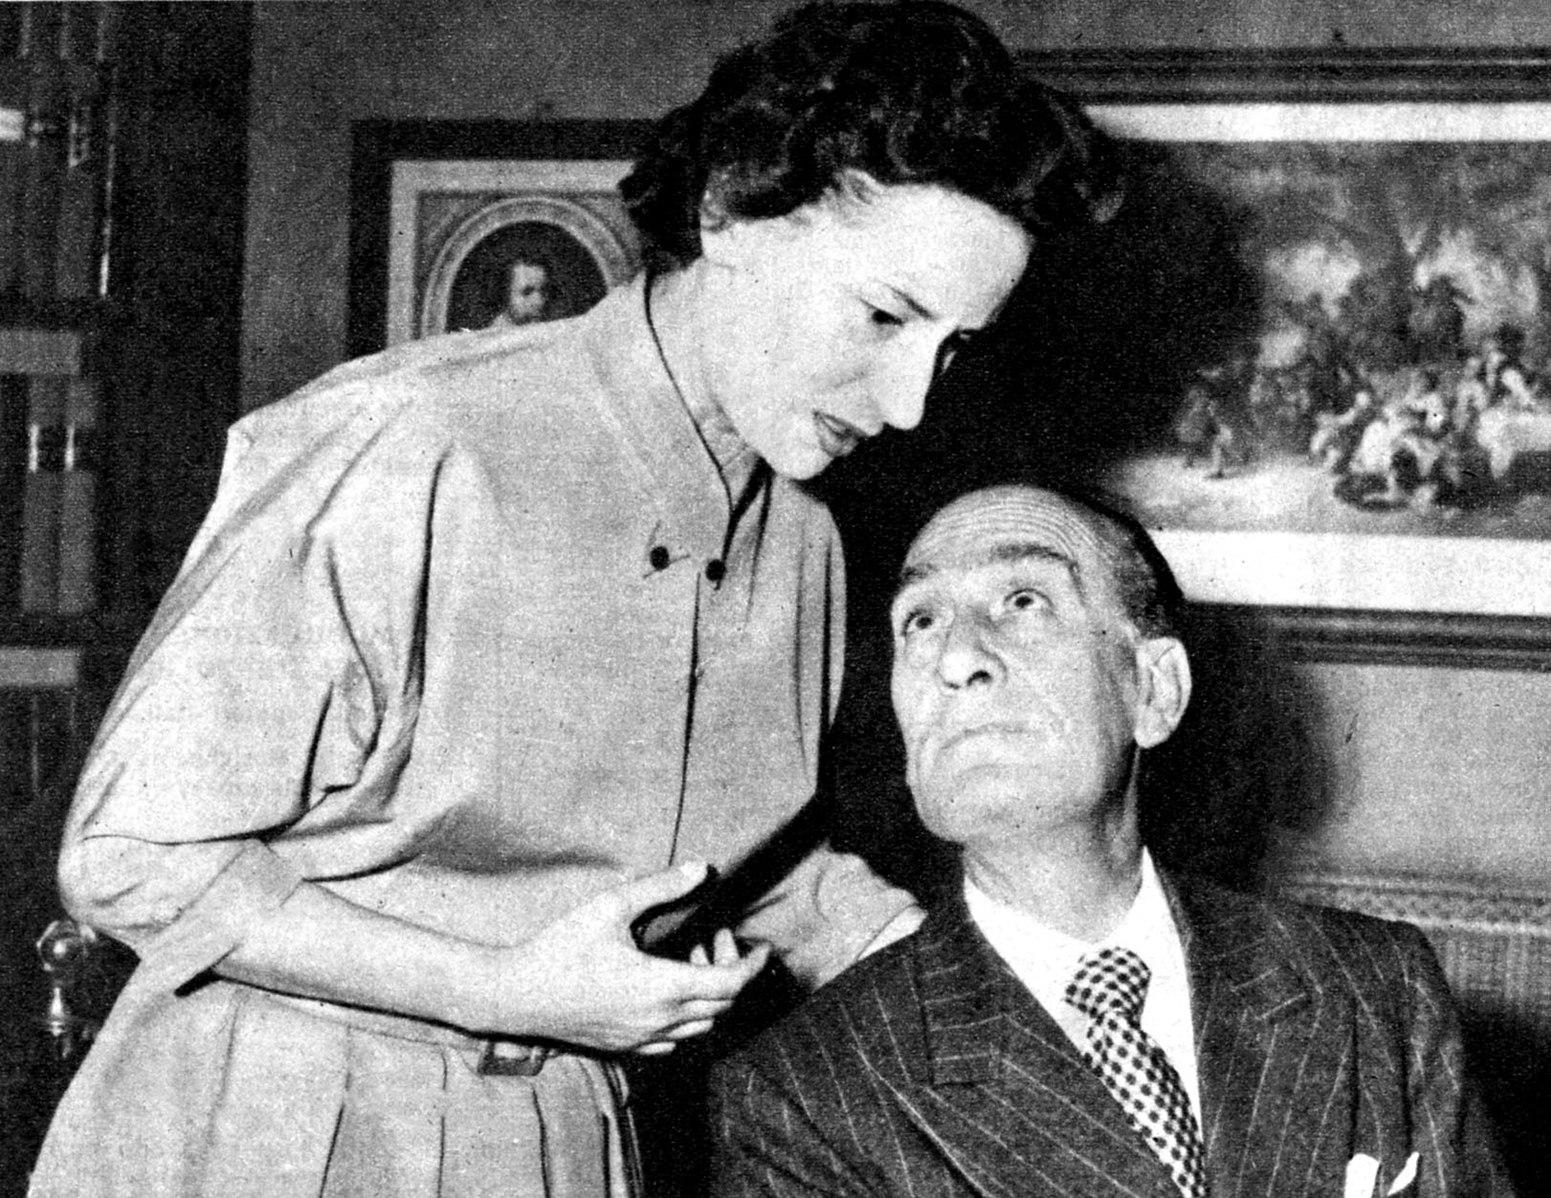 Elena Zareschi con l'attore Luigi Cimara, 1955. Immagine tratta da Radiocorriere.